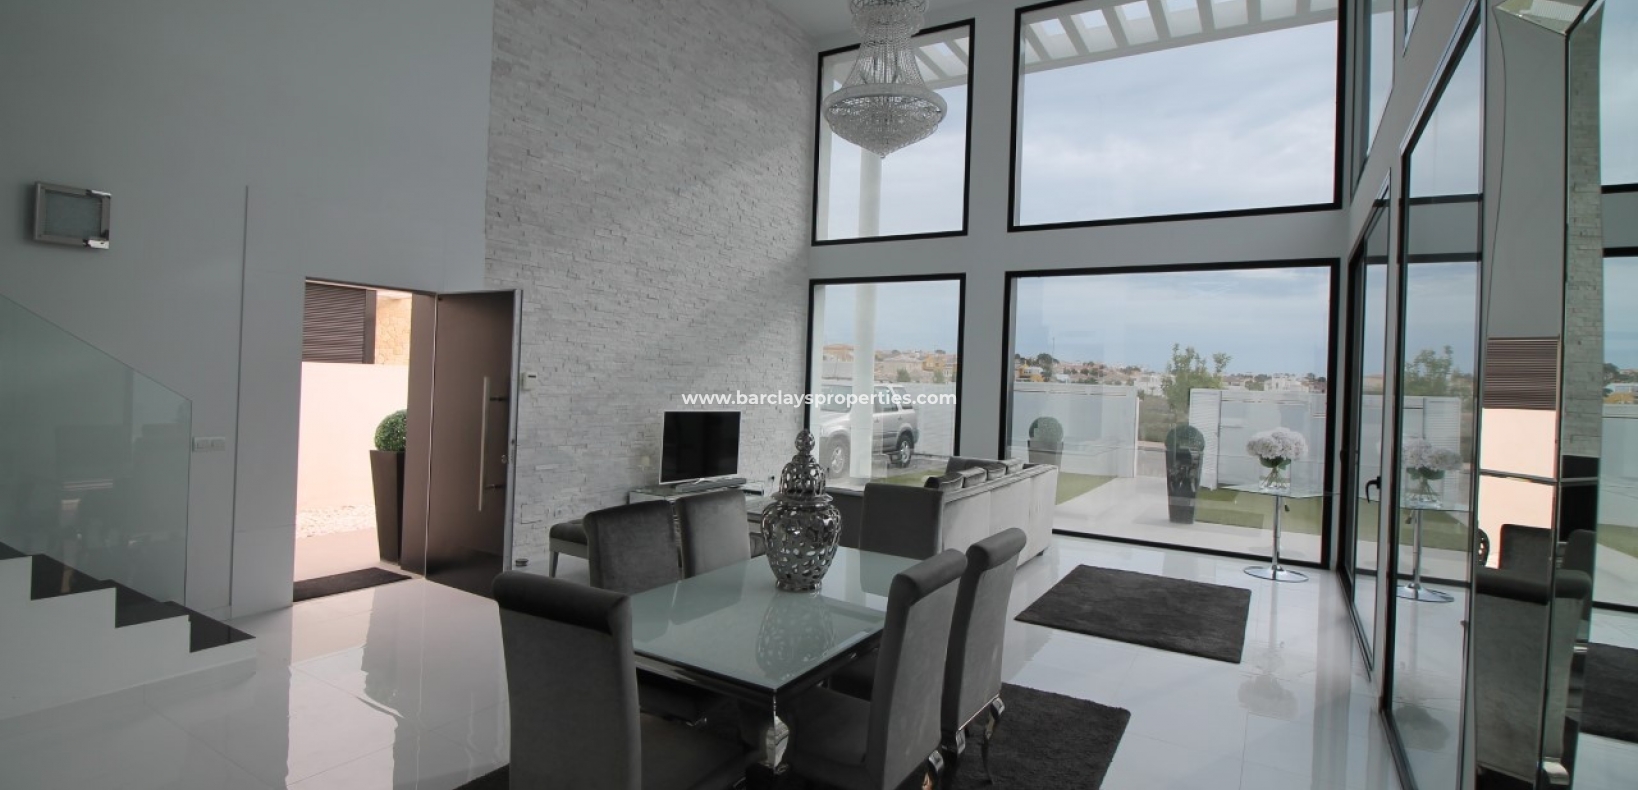 Dining Room - Modern villa for sale in urbanisation La Marina